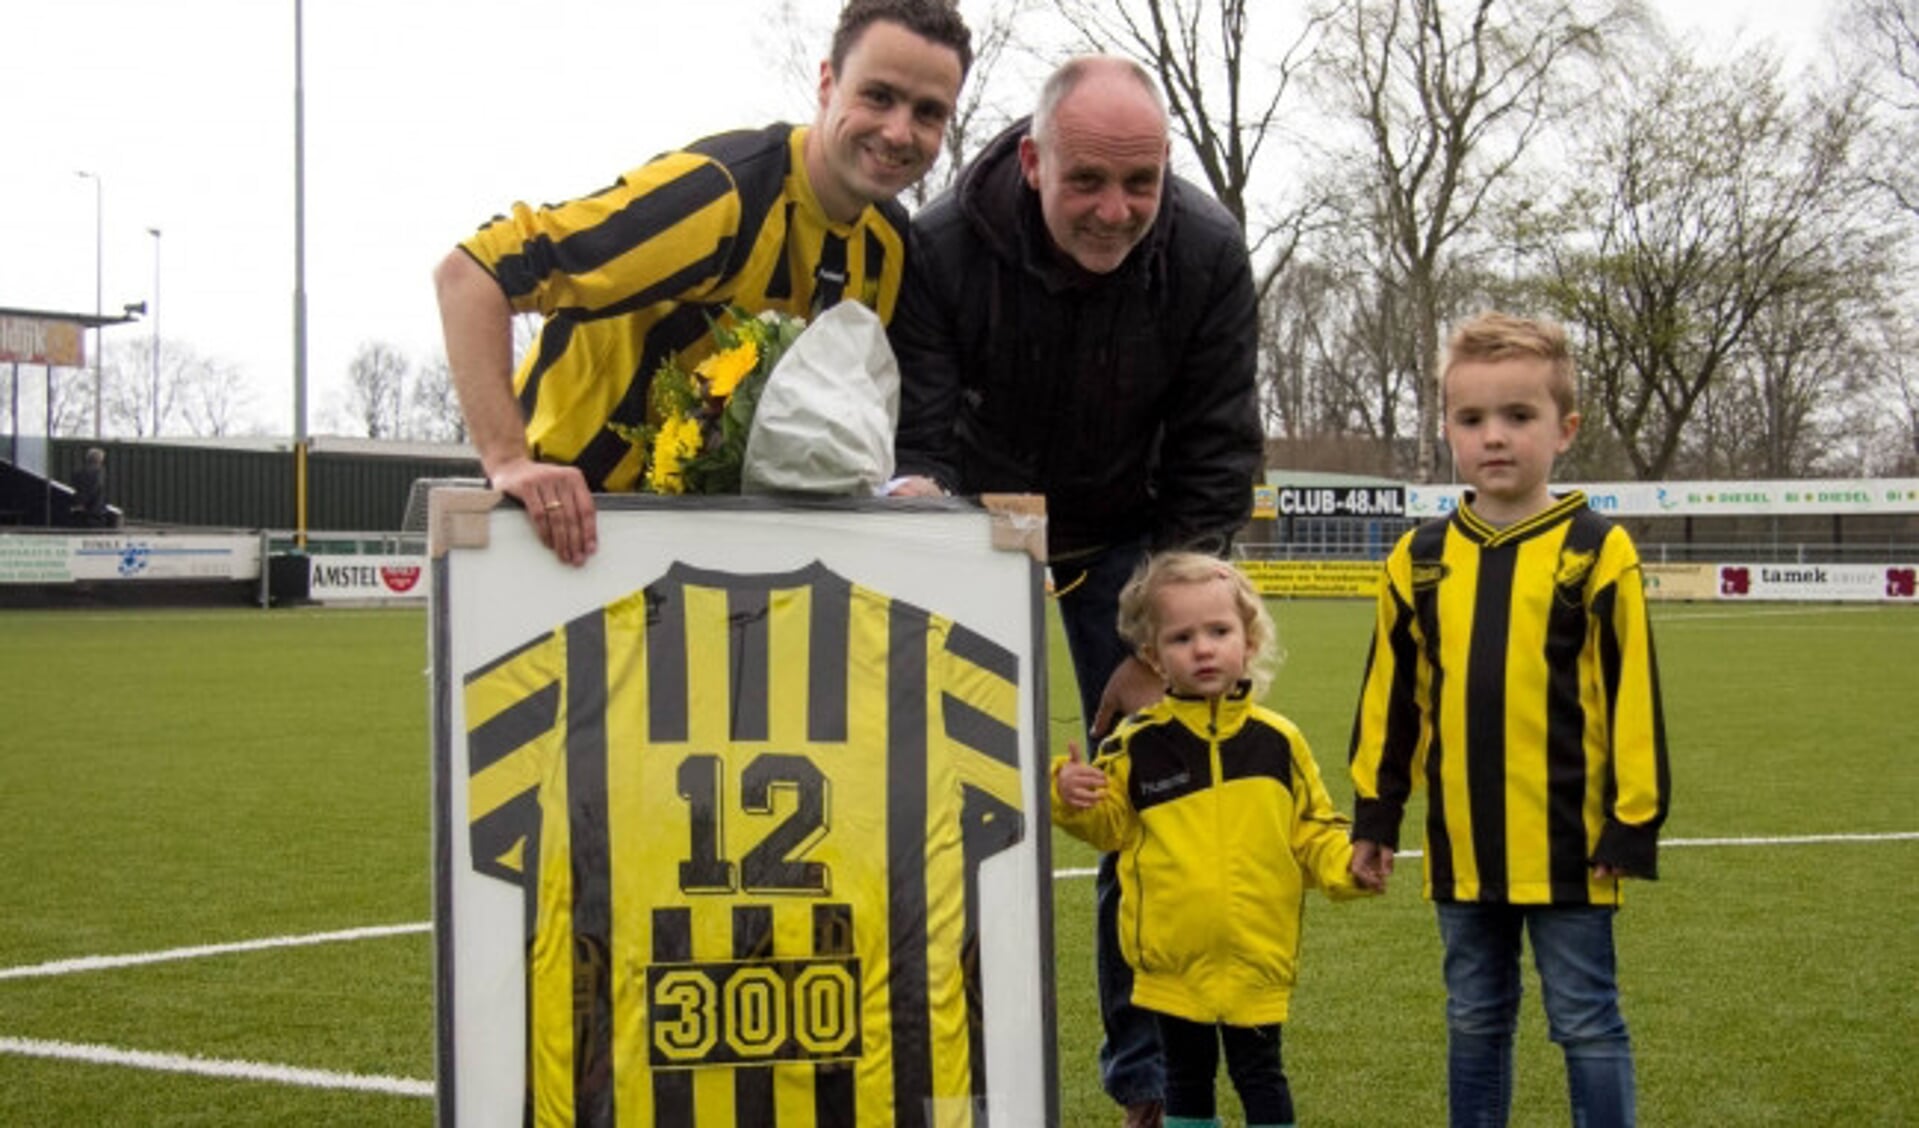  Emiel Diender op 11 april 2004 toen hij voor de wedstrijd tegen Nunspeet in het zonnetje werd gezet vanwege zijn 300ste wedstrijd voor DOS Kampen. 